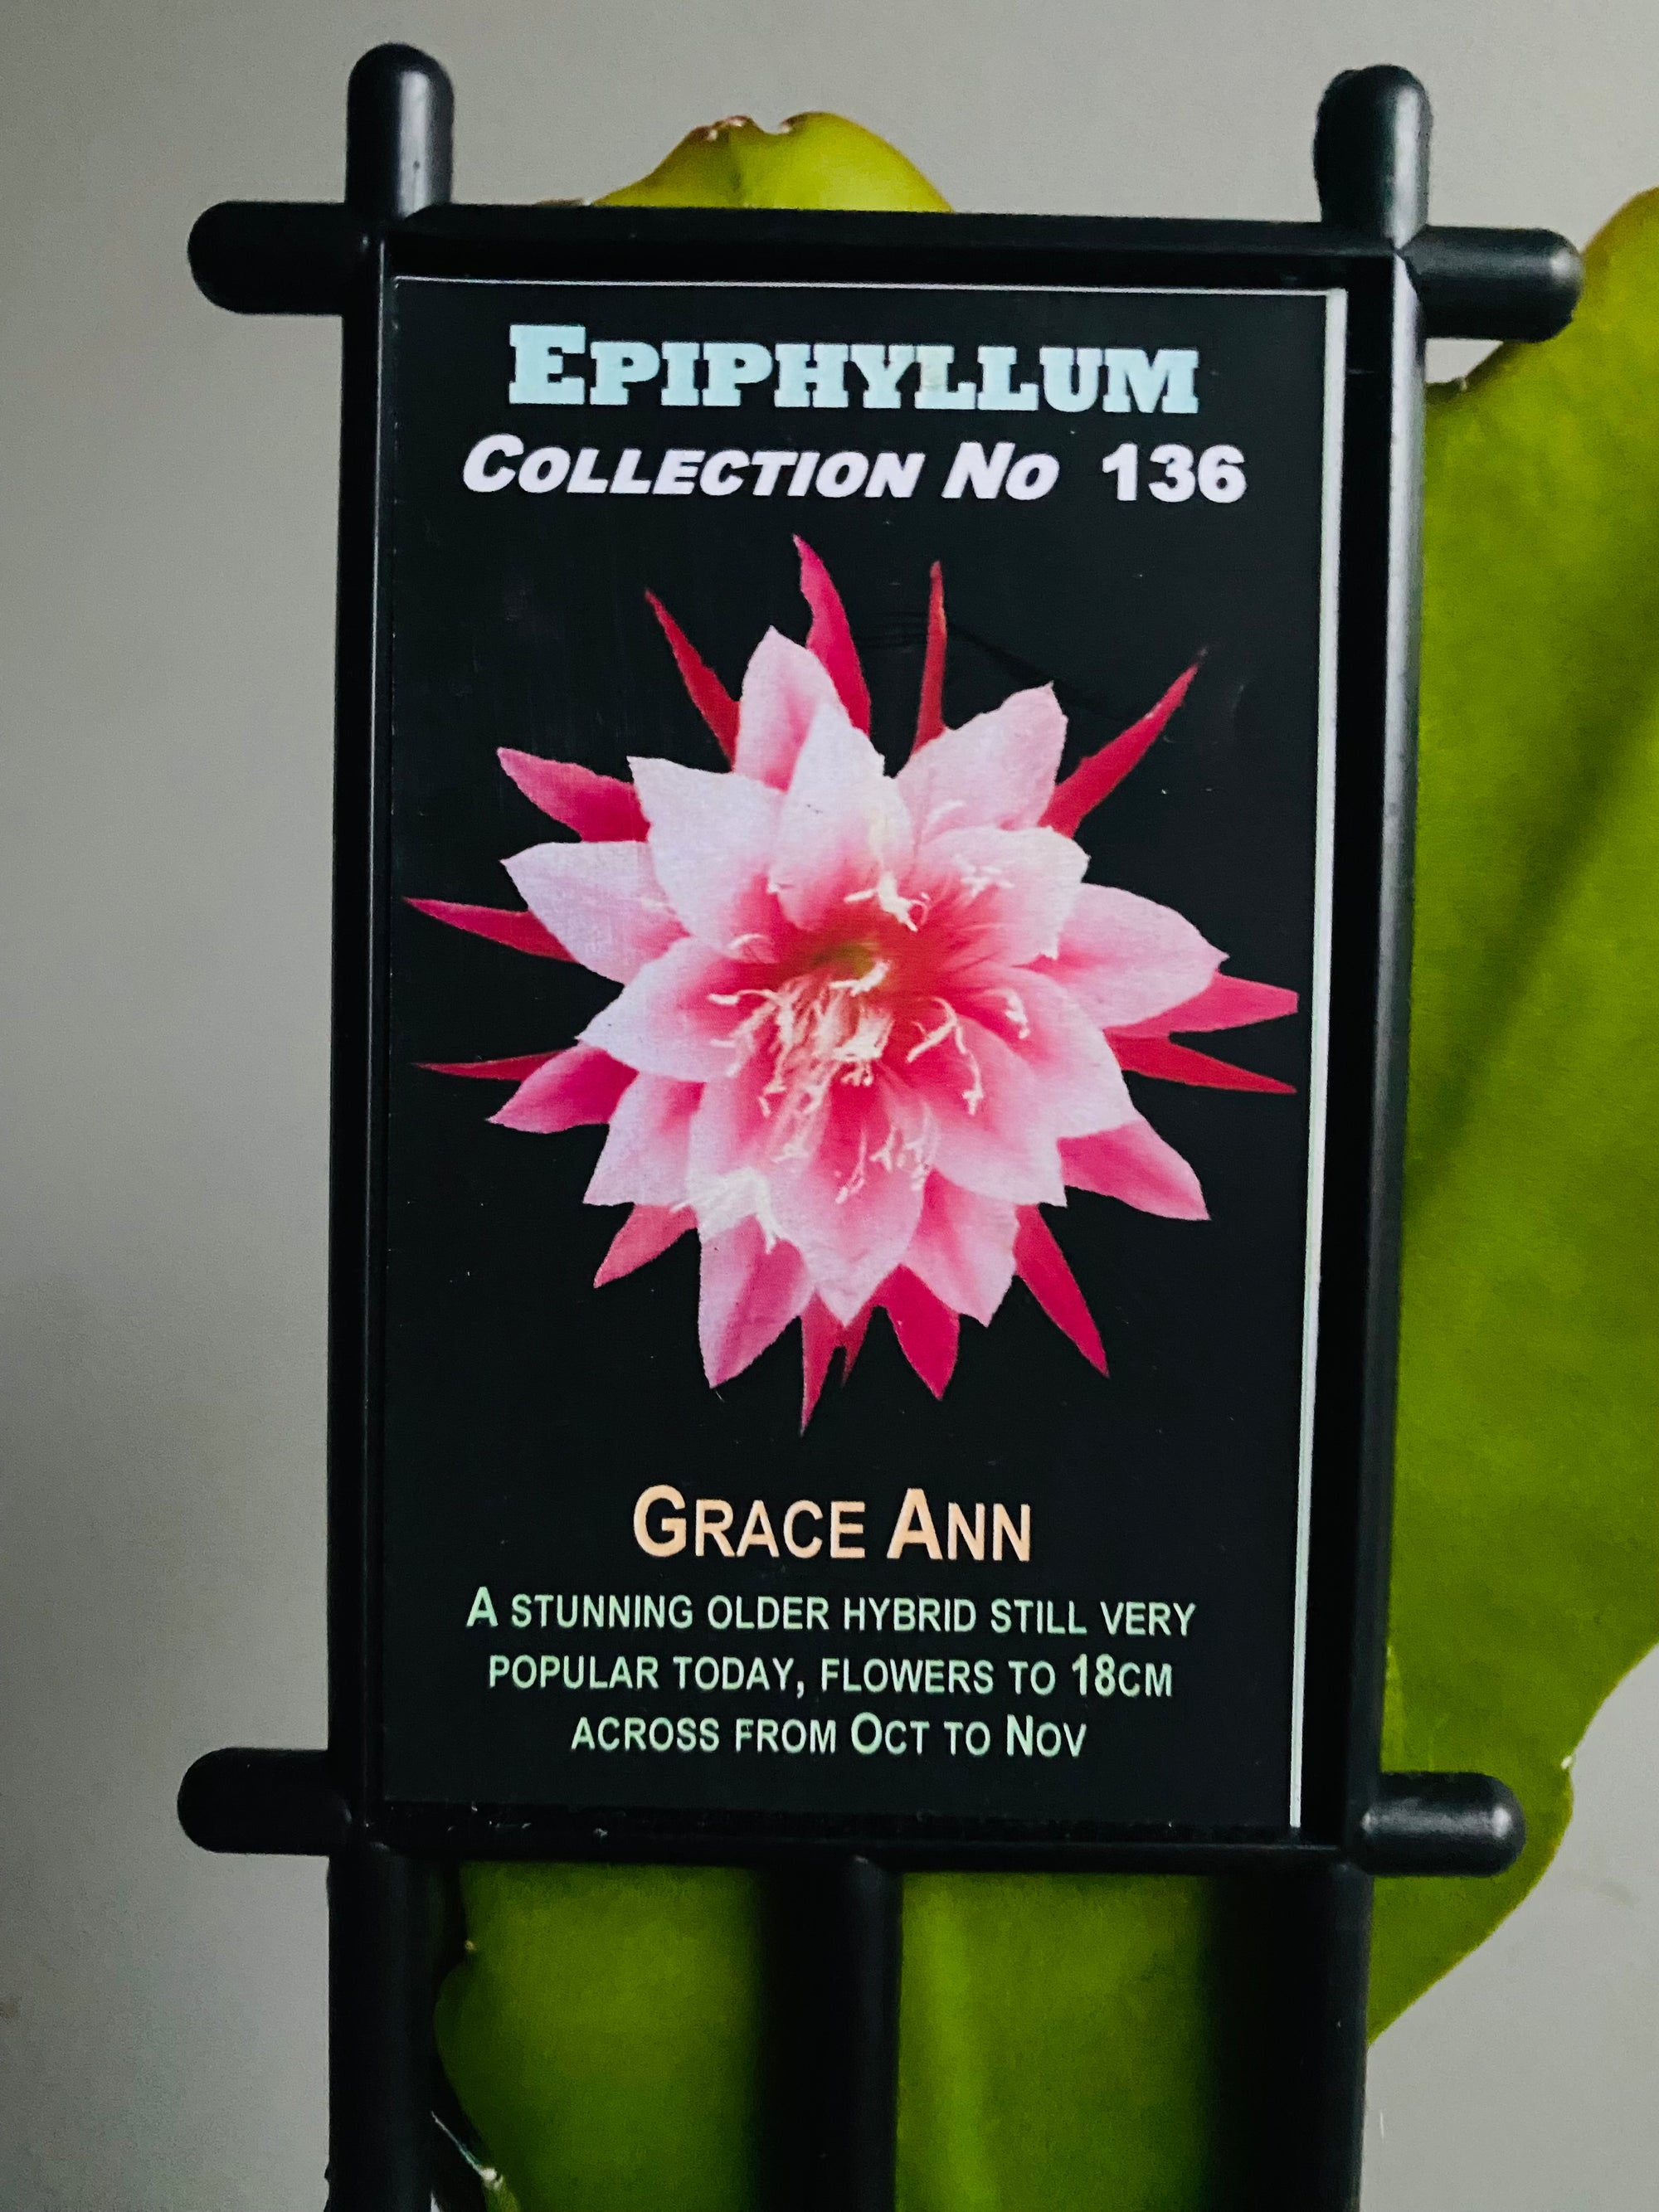 Epiphyllum 'Grace Ann' - Collection No. 136